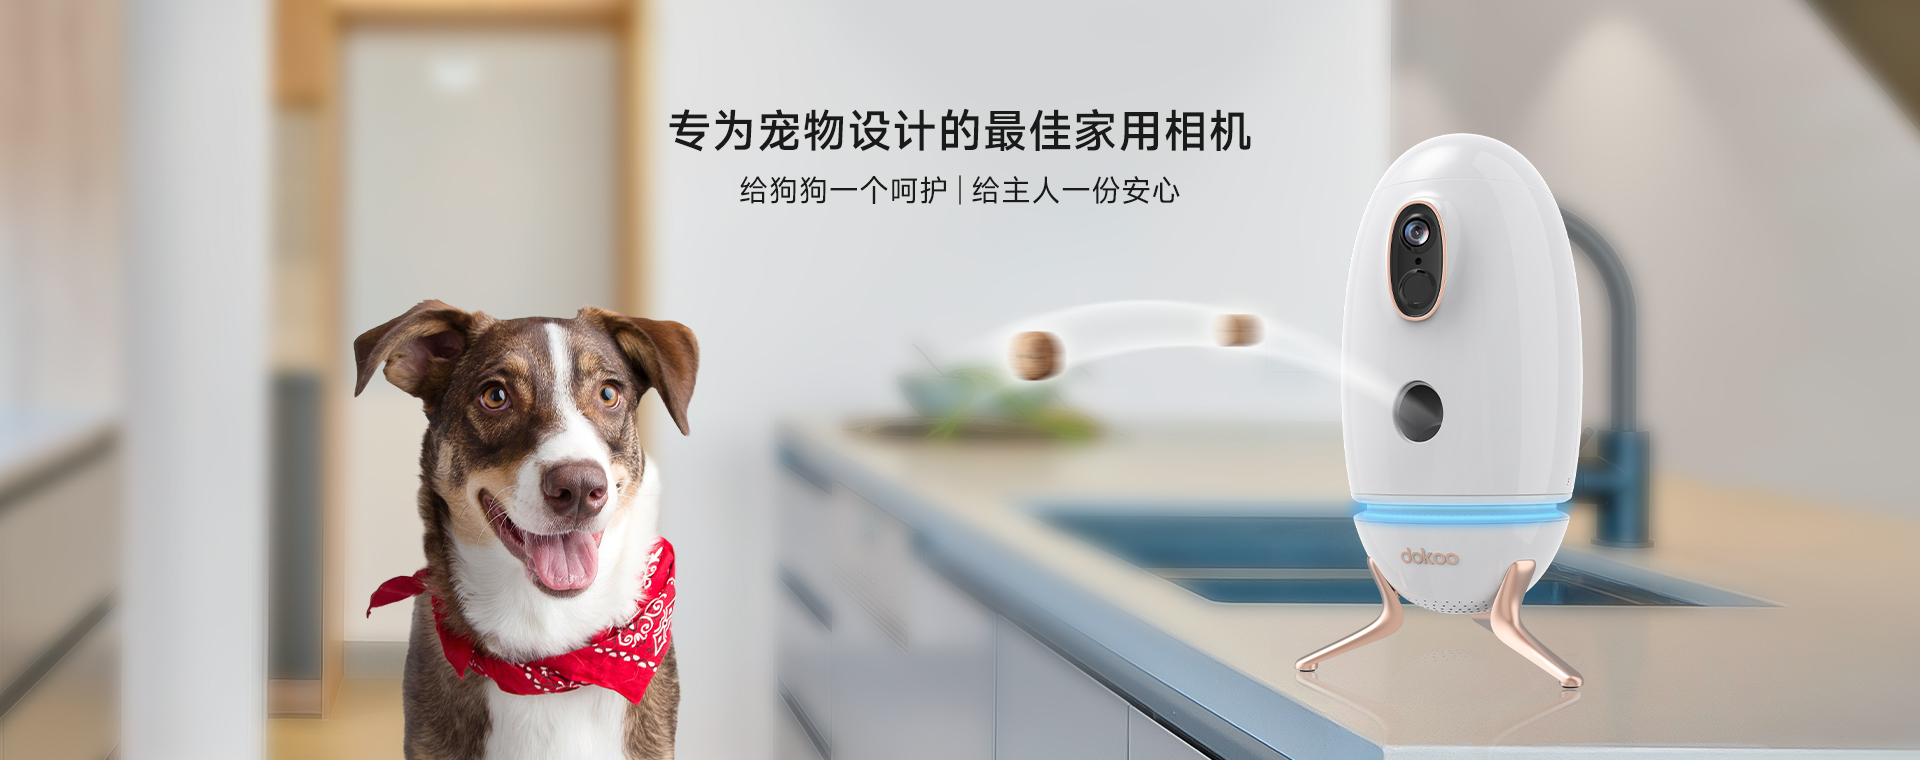 智目科技ZhiMu Tech Dokoo智能寵物(wù)投食器